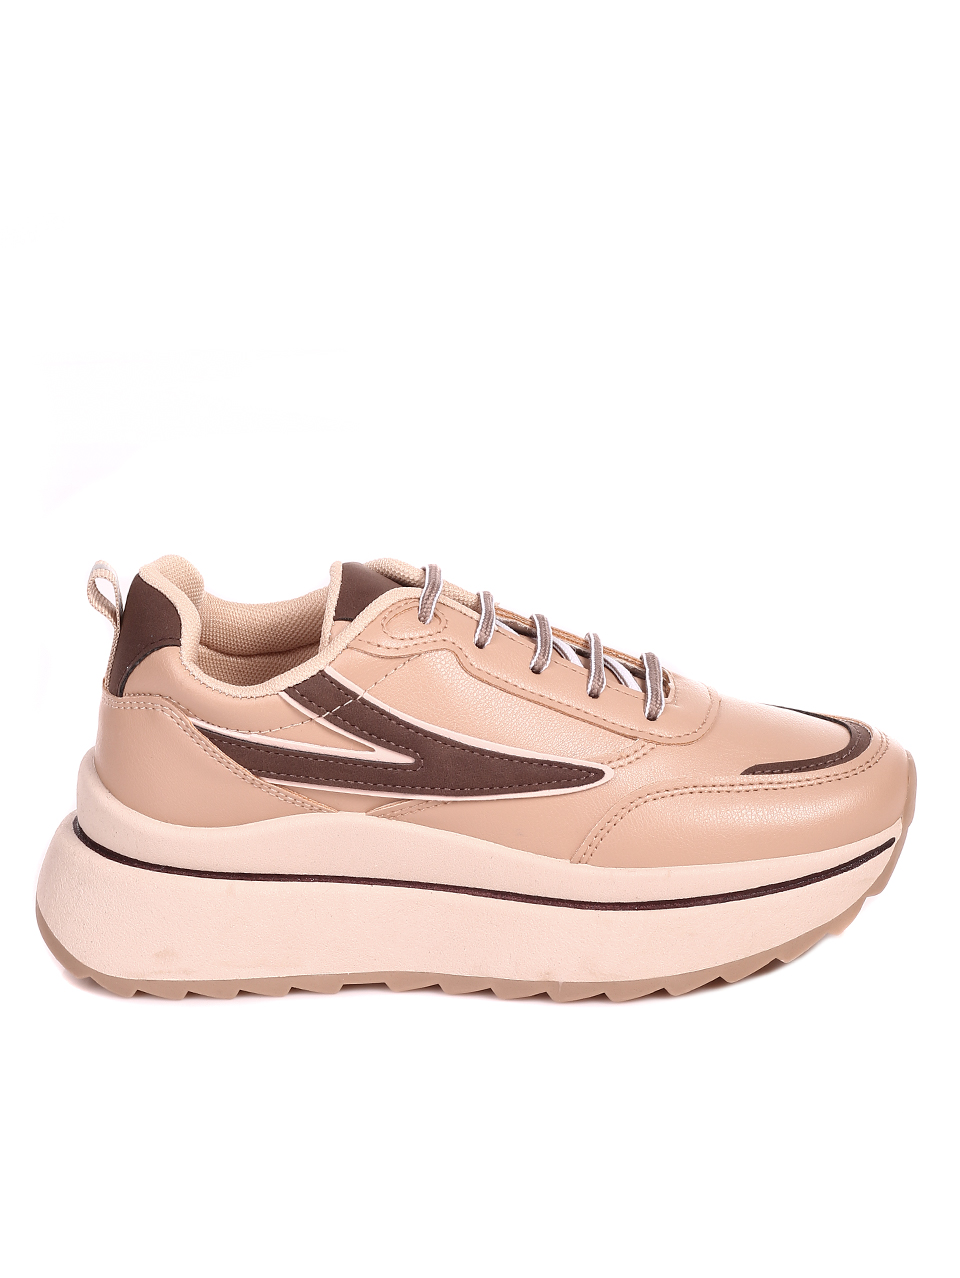 Ежедневни дамски комфортни обувки на платформа 3U-22536 beige/brown